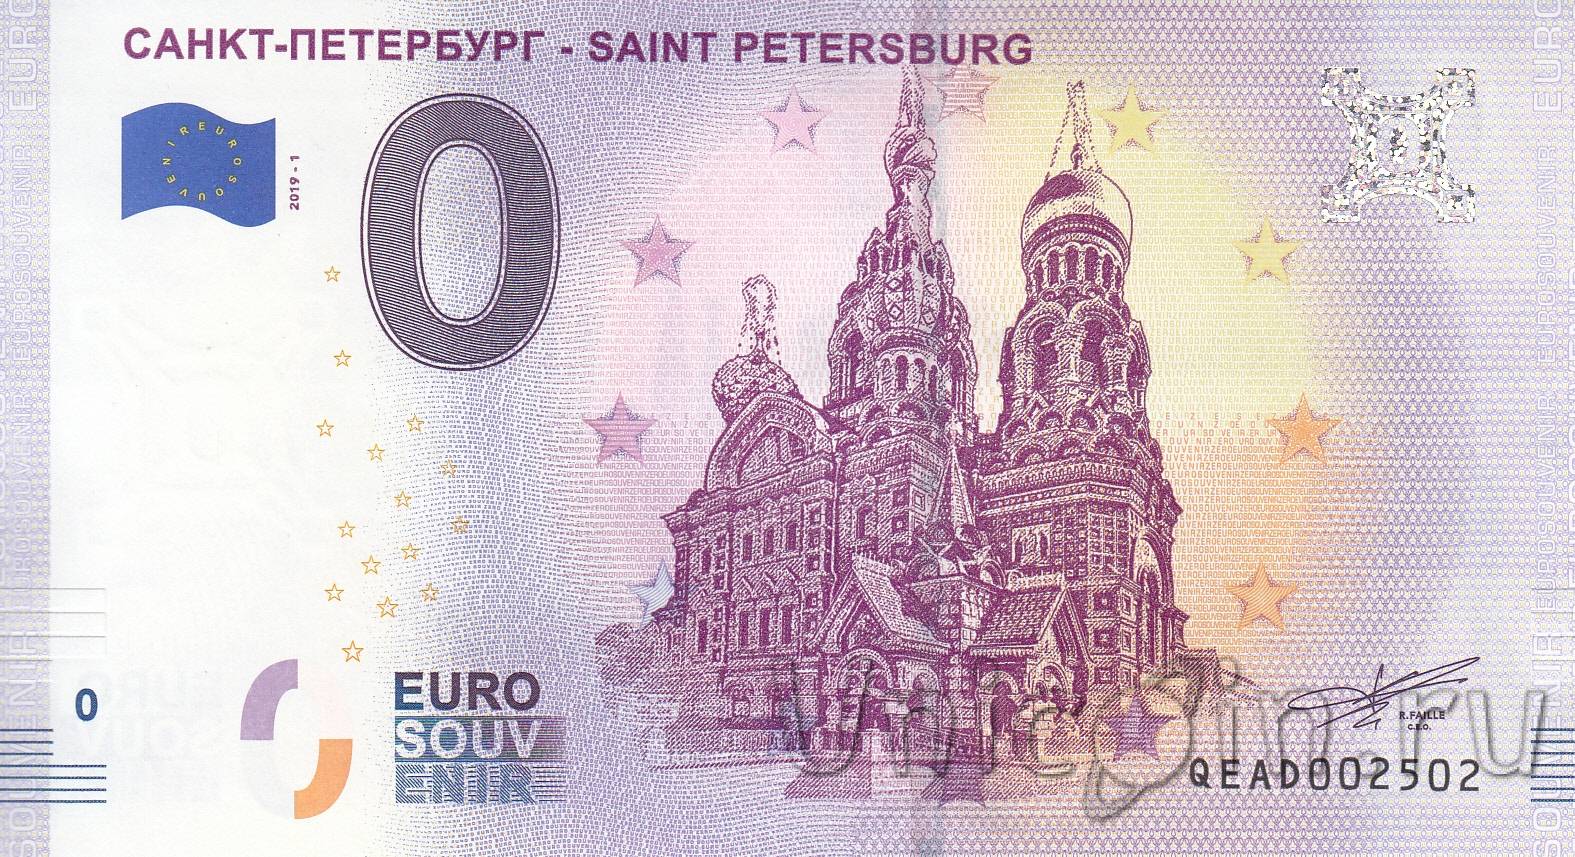 Купить евро в санкт петербурге по выгодному. Купюра 0 евро. Сувенирная банкнота достоинством 0 евро. Купюра Санкт-Петербург. Питер на деньгах.